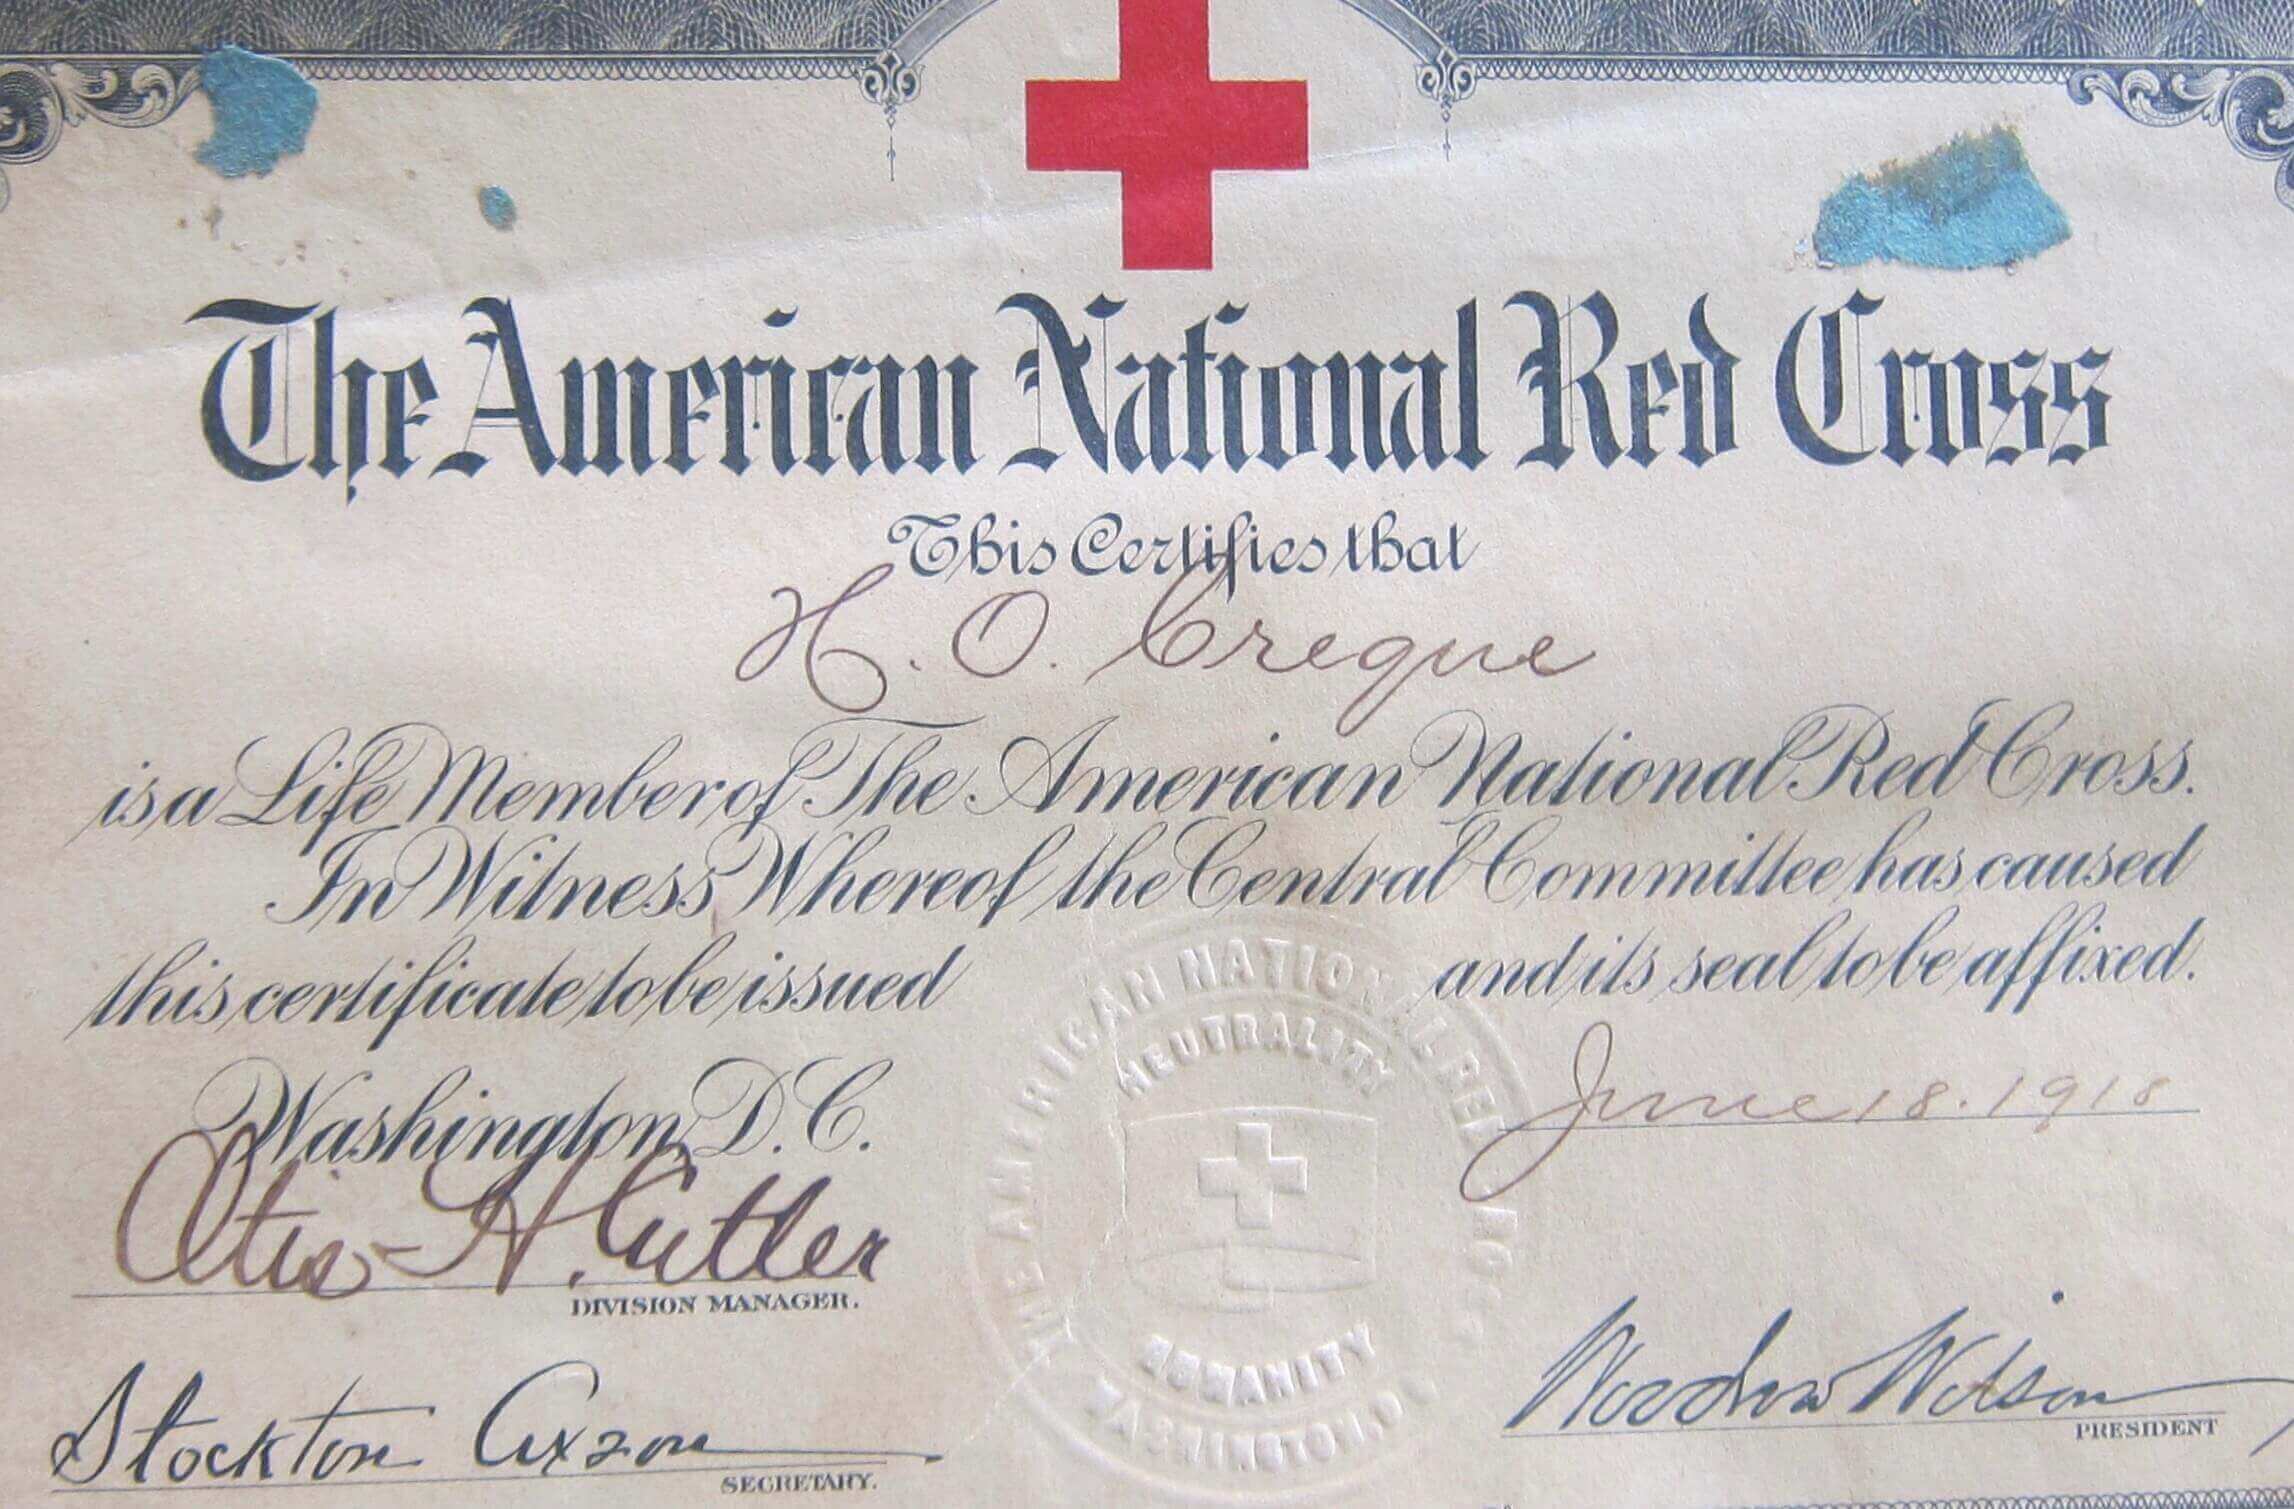 Red Cross Certificate of the Virgin Islands